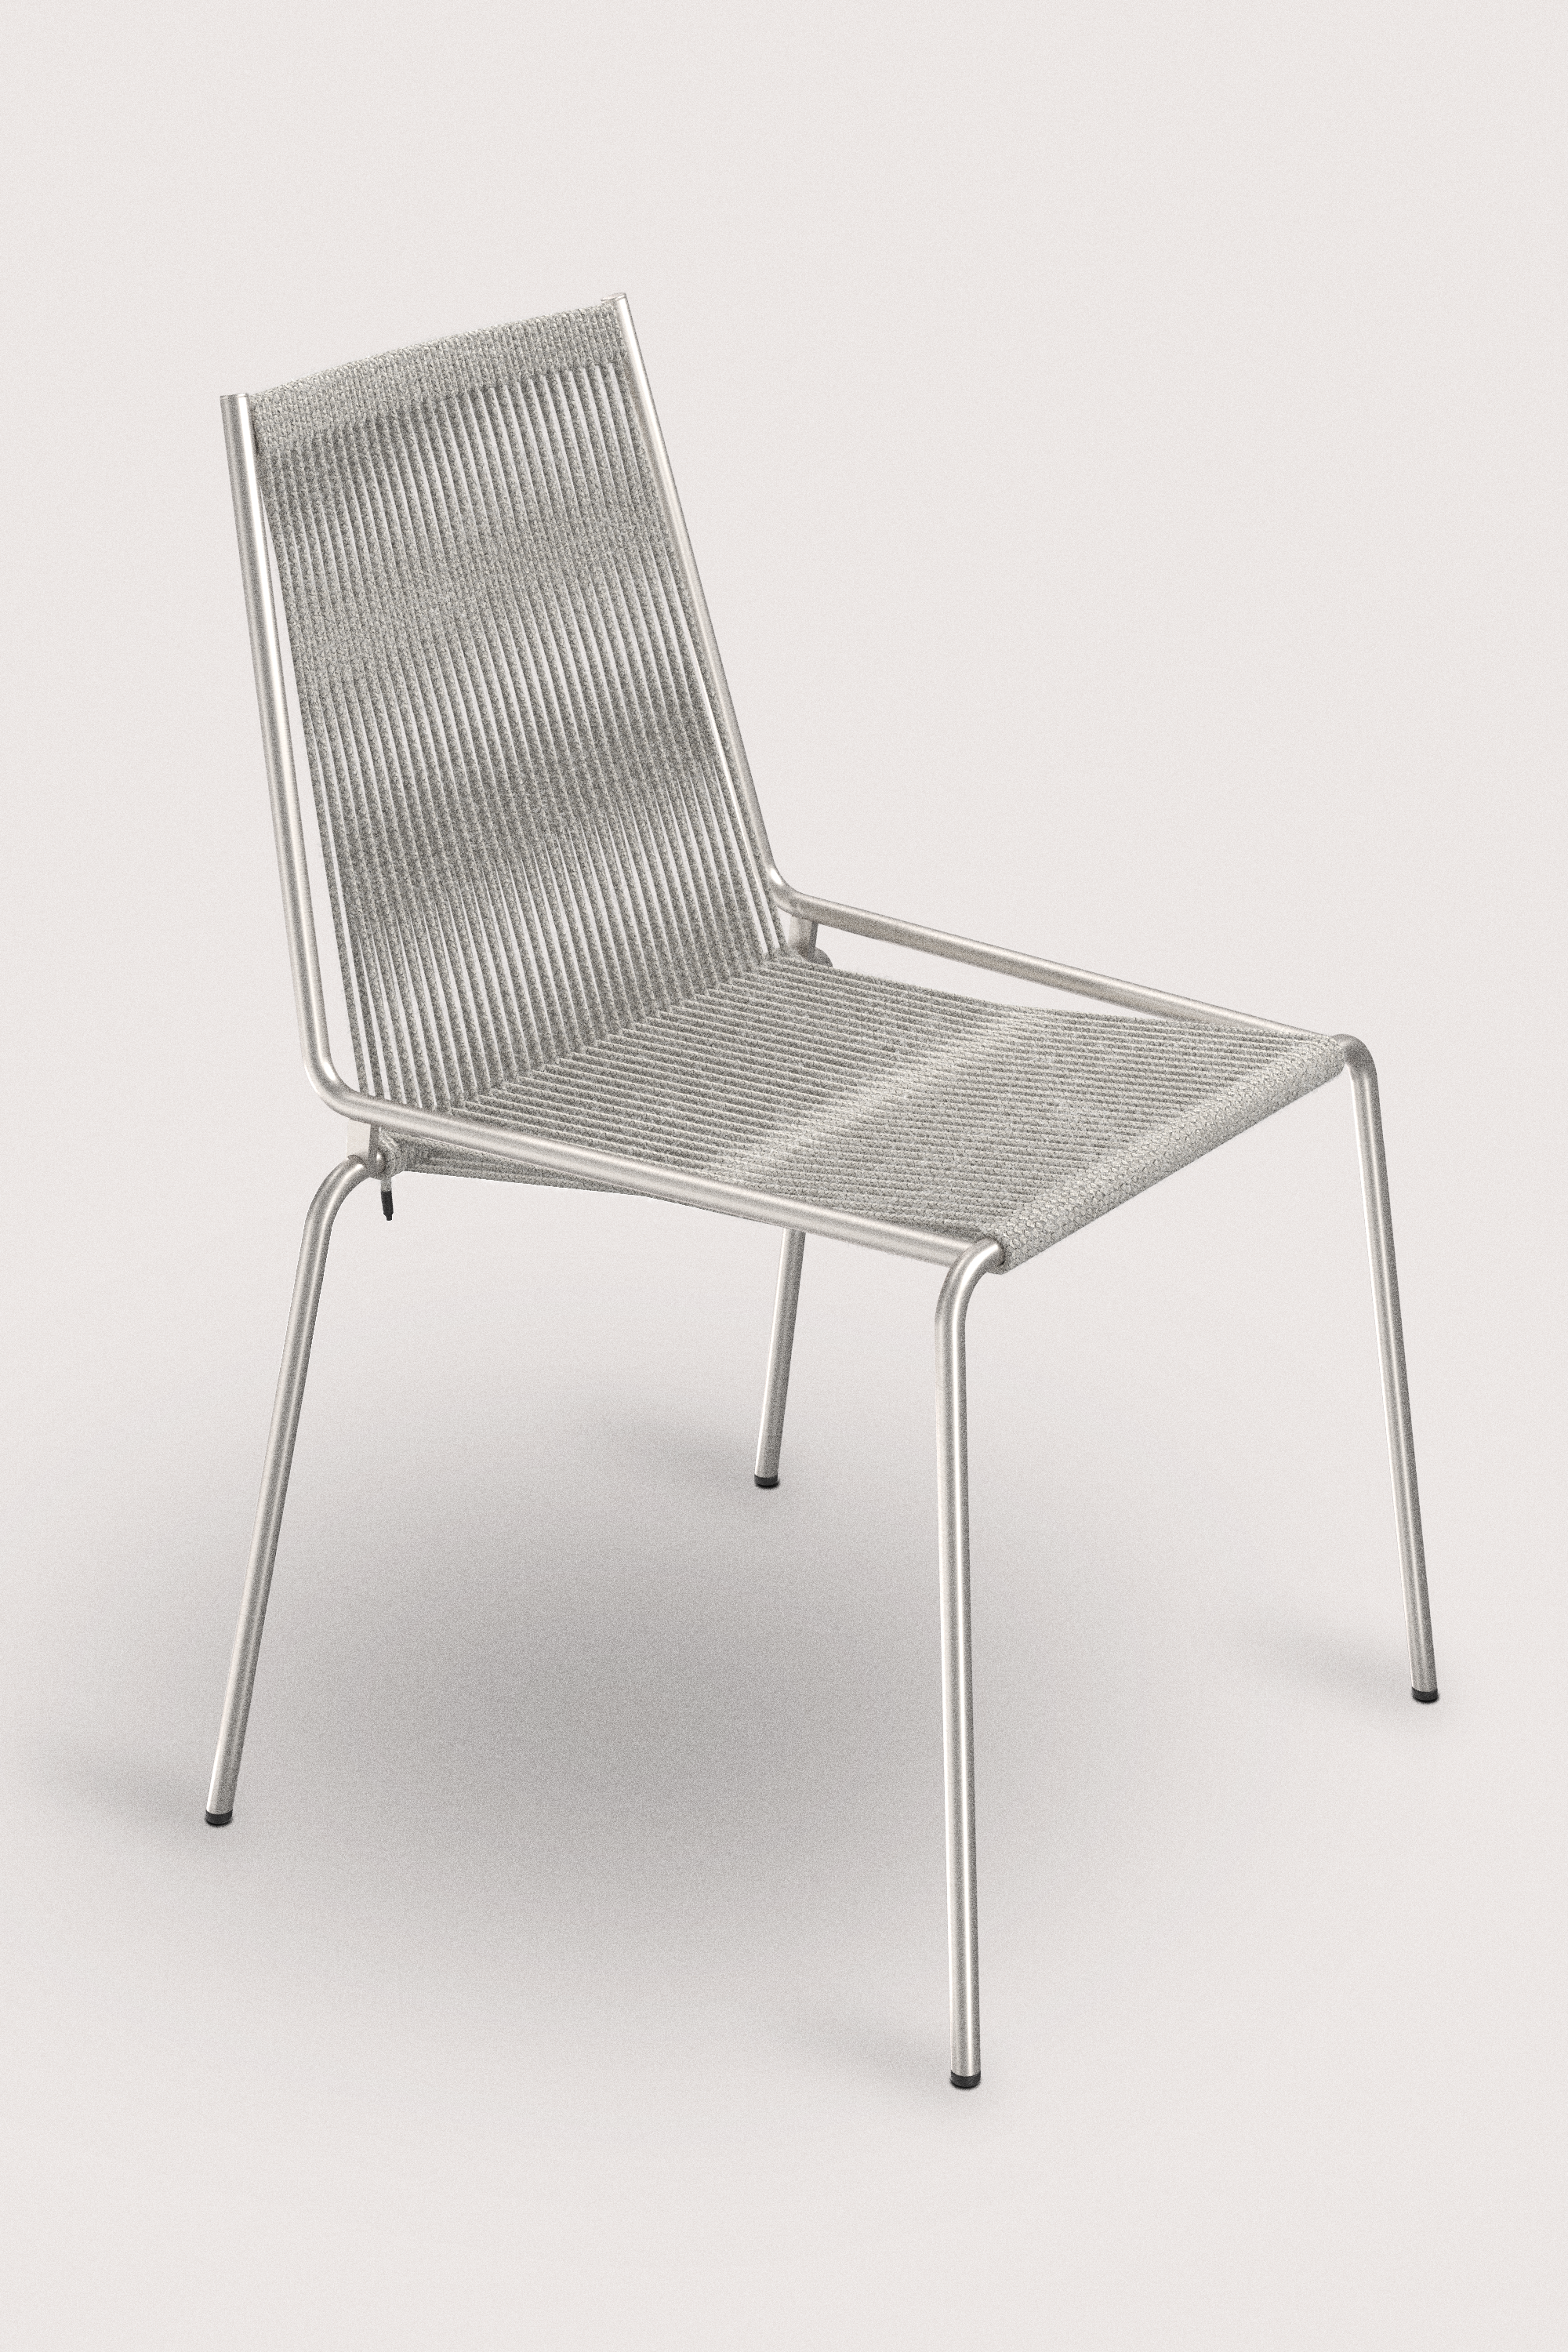 D301_Noel Chair_Steel base_wool grey_Thorup Cph.png